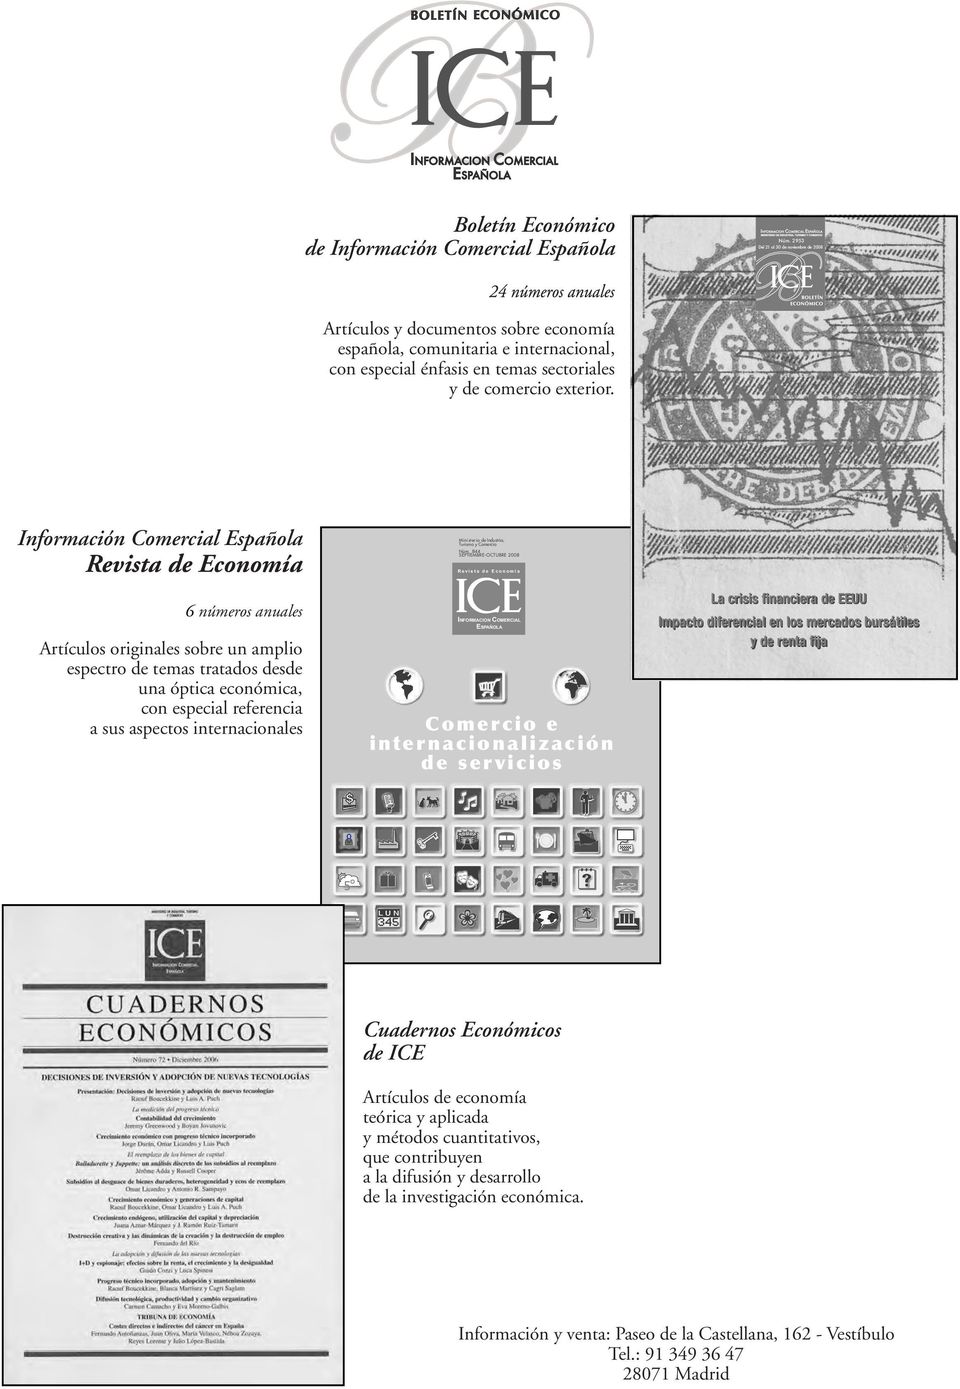 Información Comercial Española Revista de Economía 6 números anuales Artículos originales sobre un amplio espectro de temas tratados desde una óptica económica, con especial referencia a sus aspectos